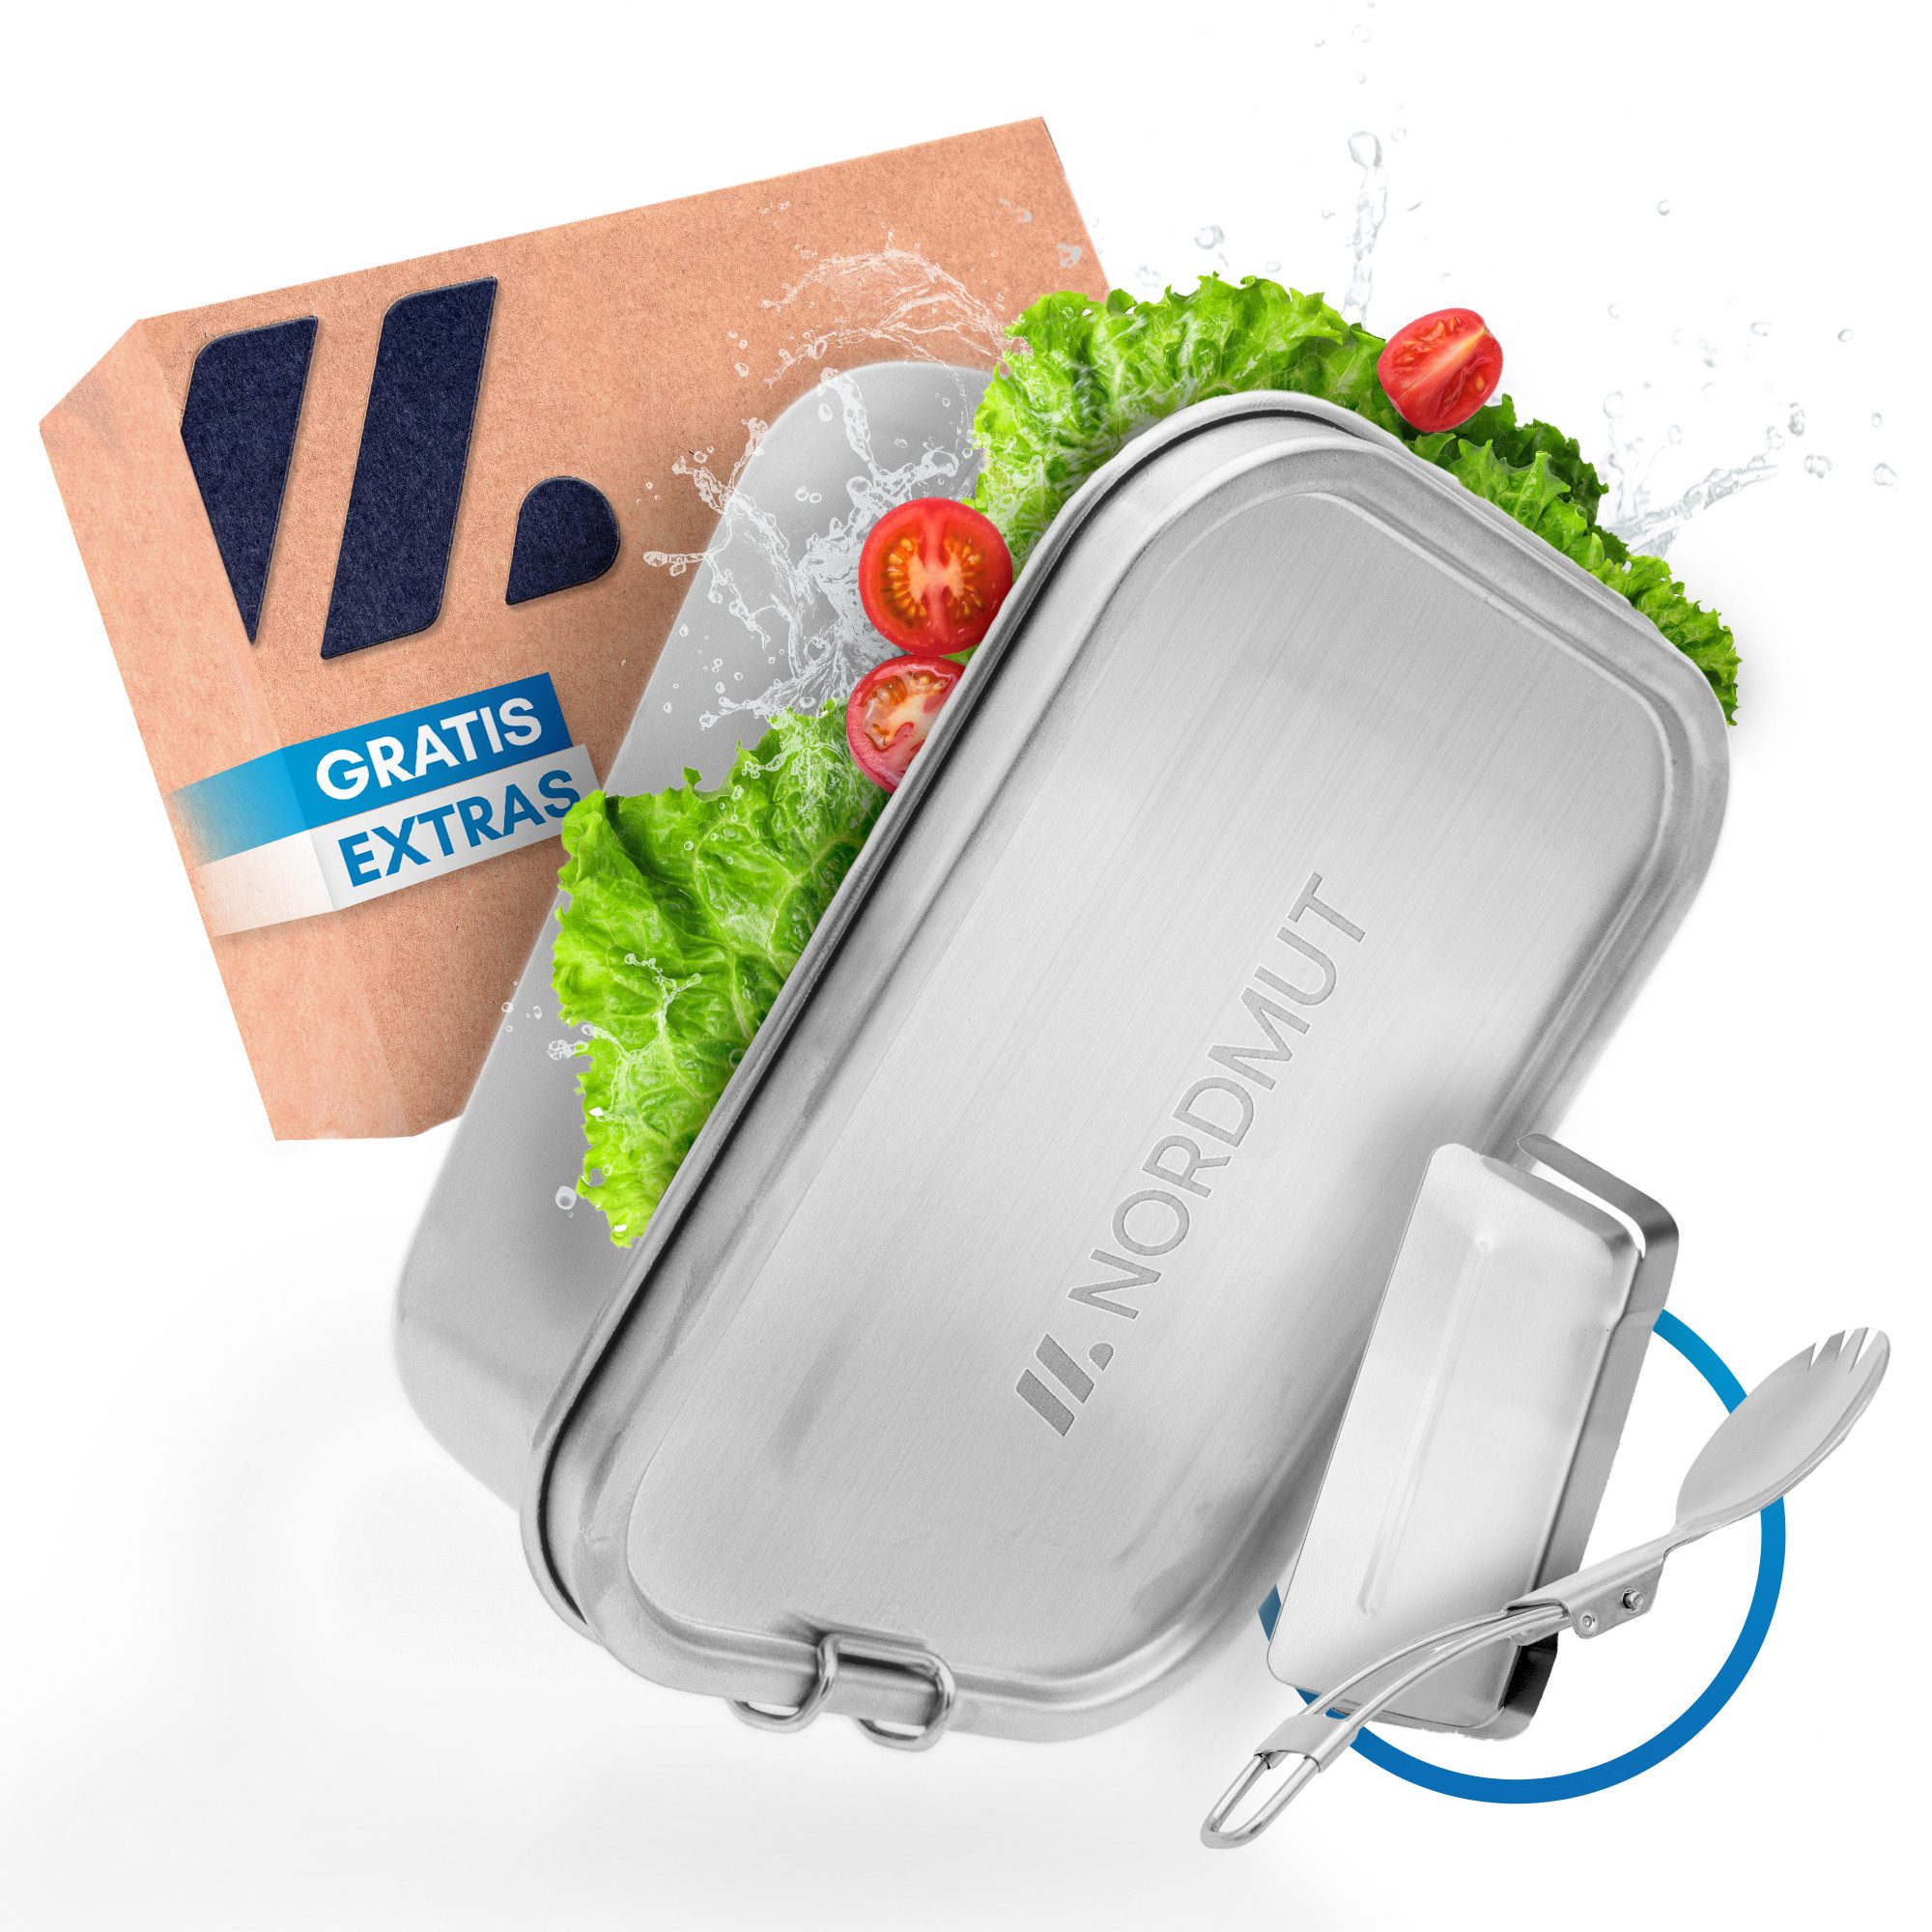 Nordmut Lunchbox Edelstahl Lunchbox [mit Trennwand] - Metall Brotdose 1400ml, BPA frei und auslaufsicher